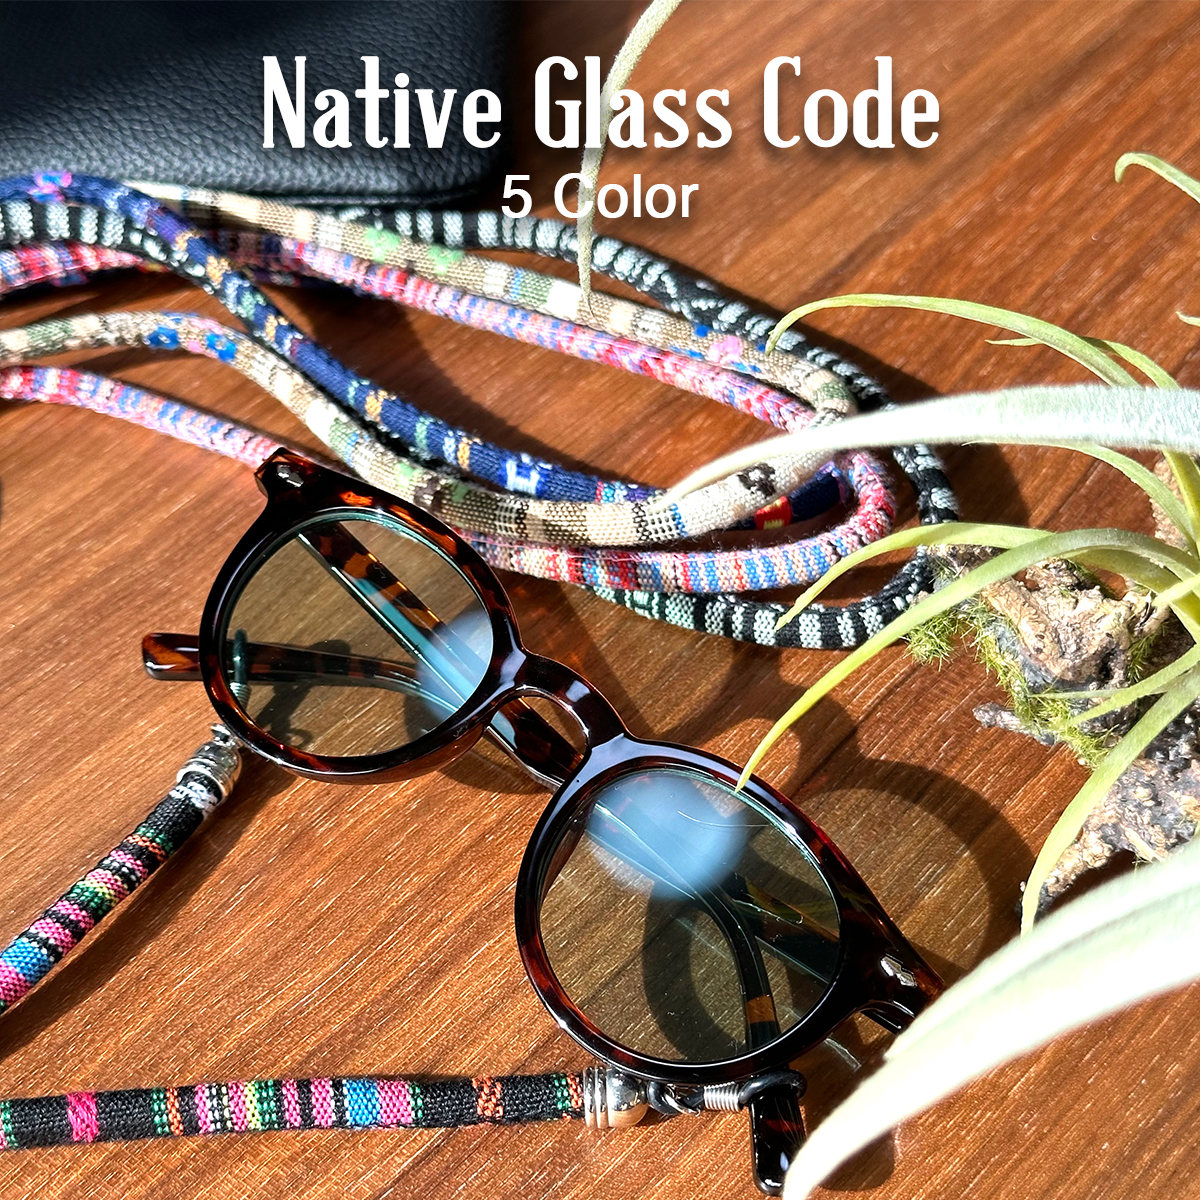 ネイティブ グラスコード 全5色 グラスチェーン メガネコード めがね 眼鏡 サングラス メガネホルダー ストラップ アウトドア 民族柄 エスニック  オルテガ